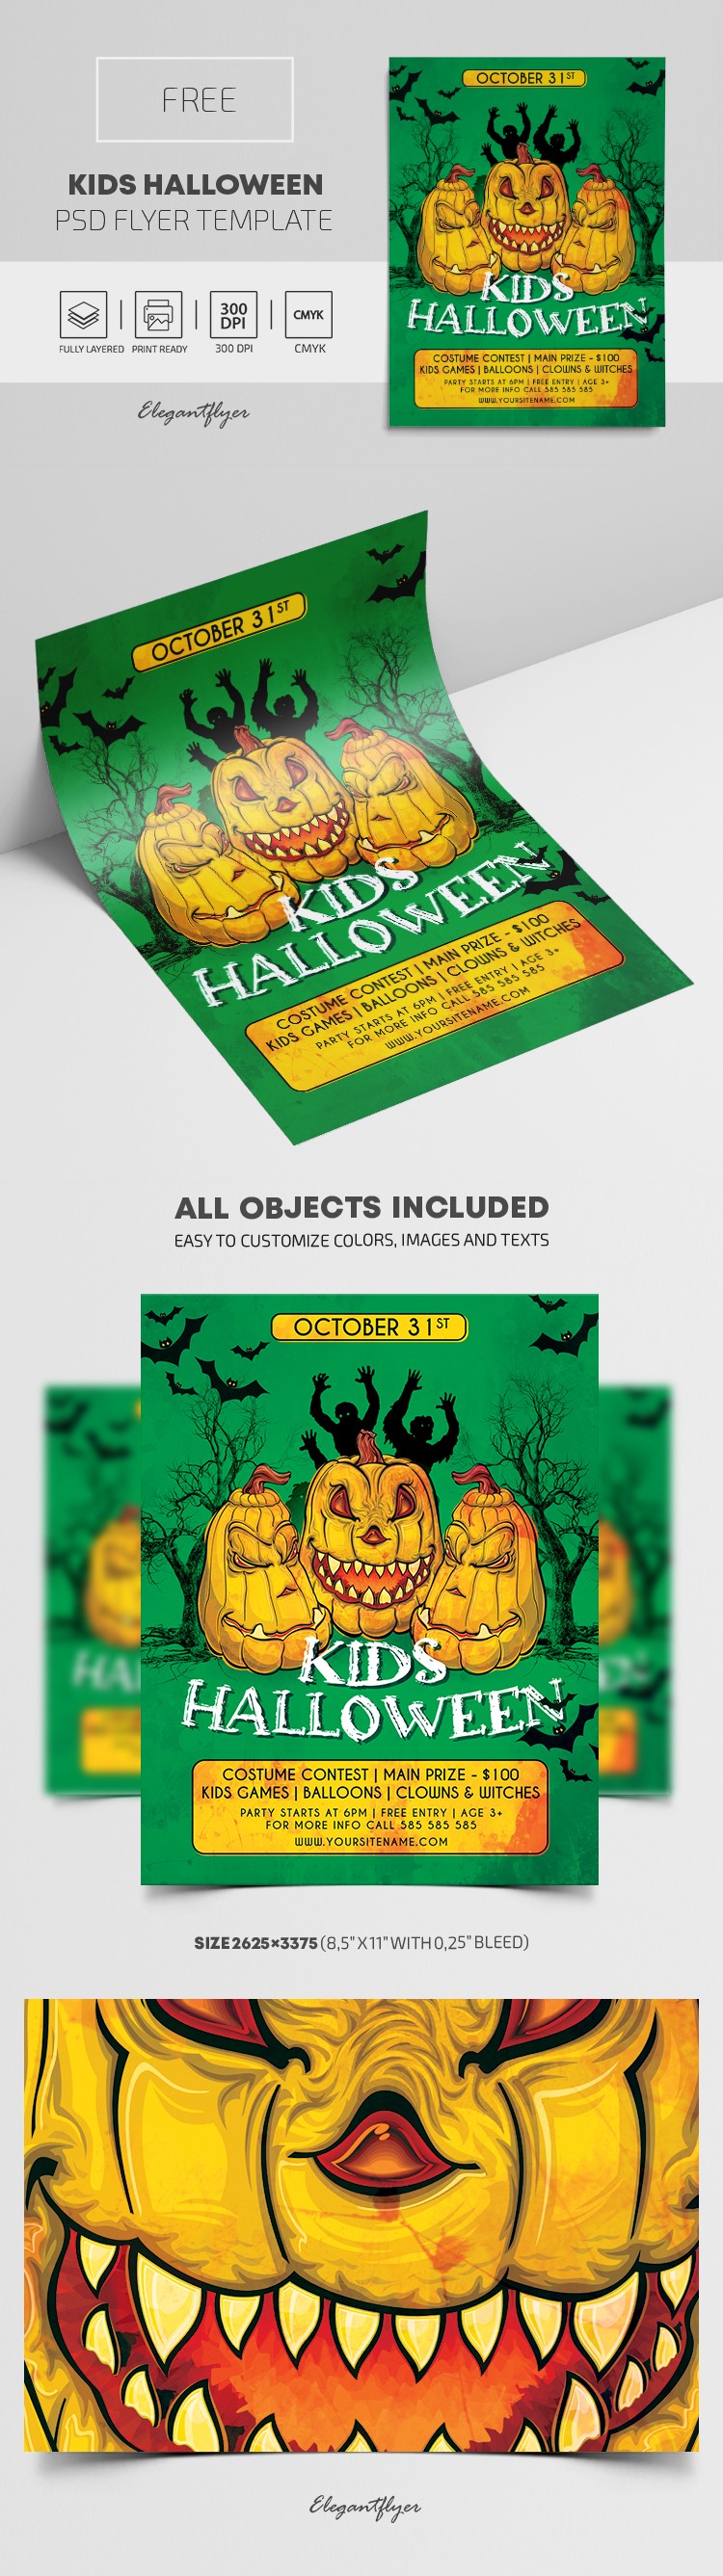 Folheto de Halloween para crianças by ElegantFlyer